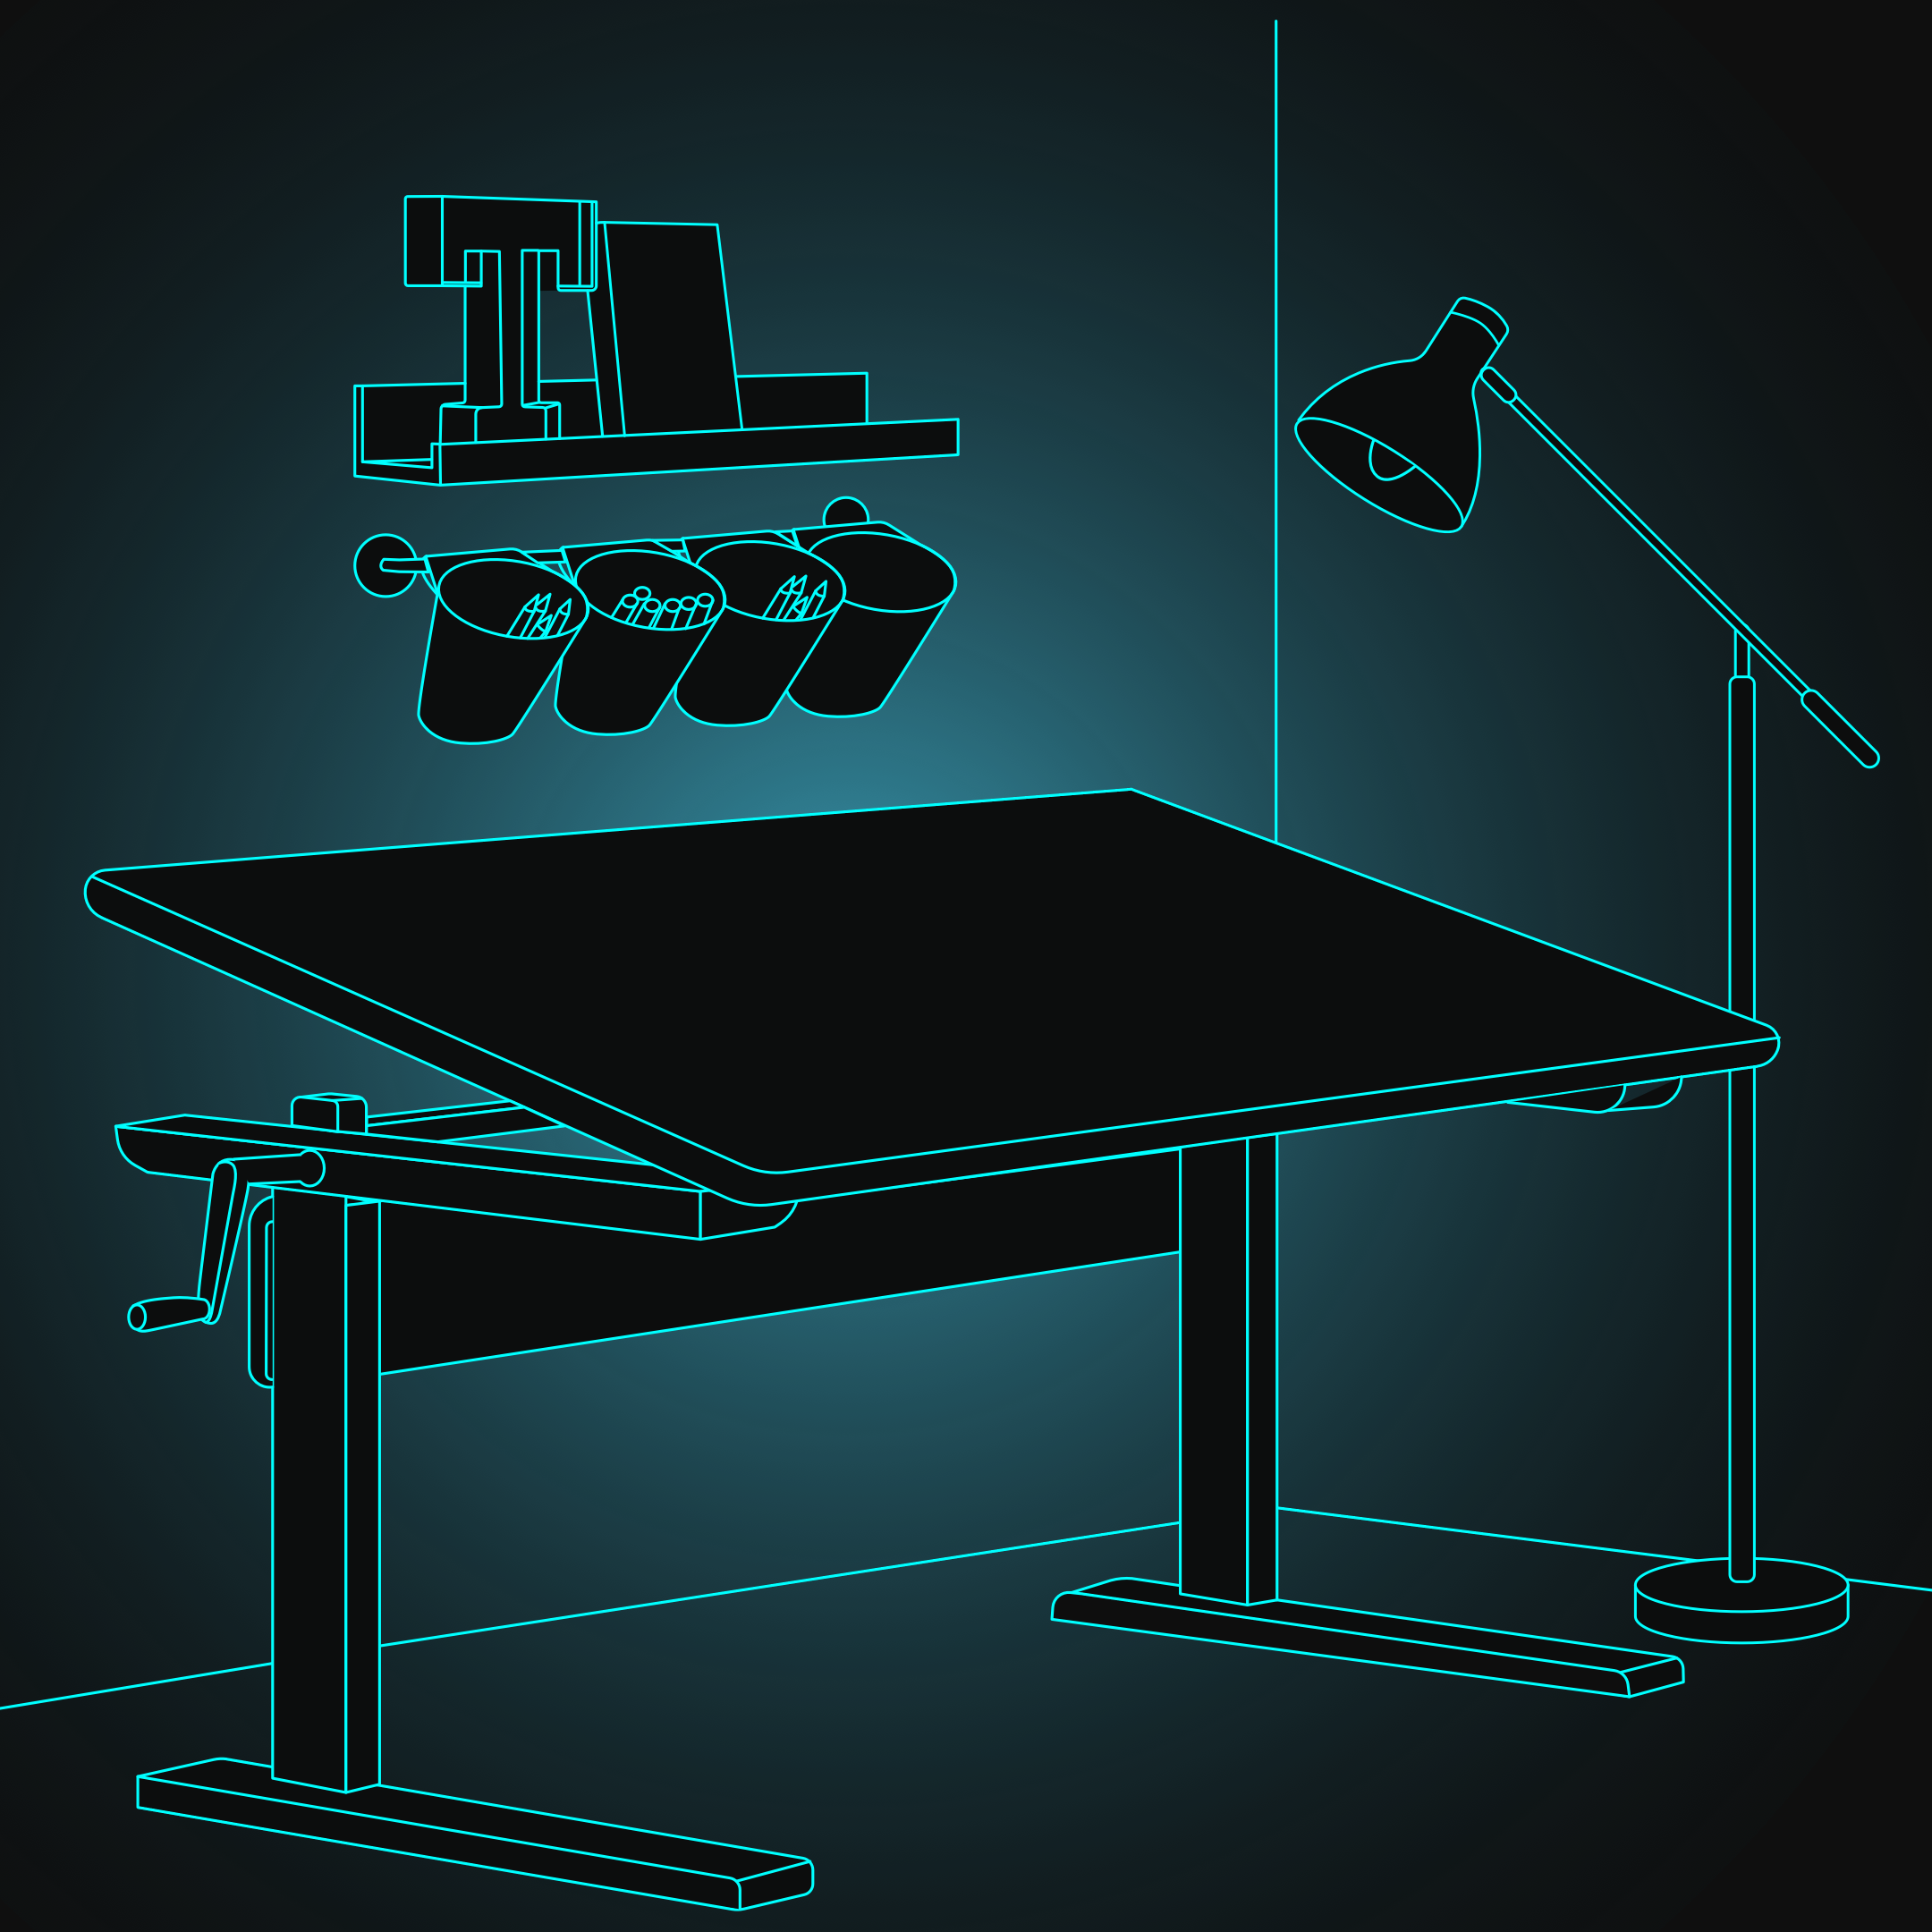 Ein höhenverstellbarer Tisch ist die perfekte Ergänzung zu Deinem Gamechanger Gaming Stuhl, um die optimalste ergonomische Sitzhaltung einnehmen zu können.